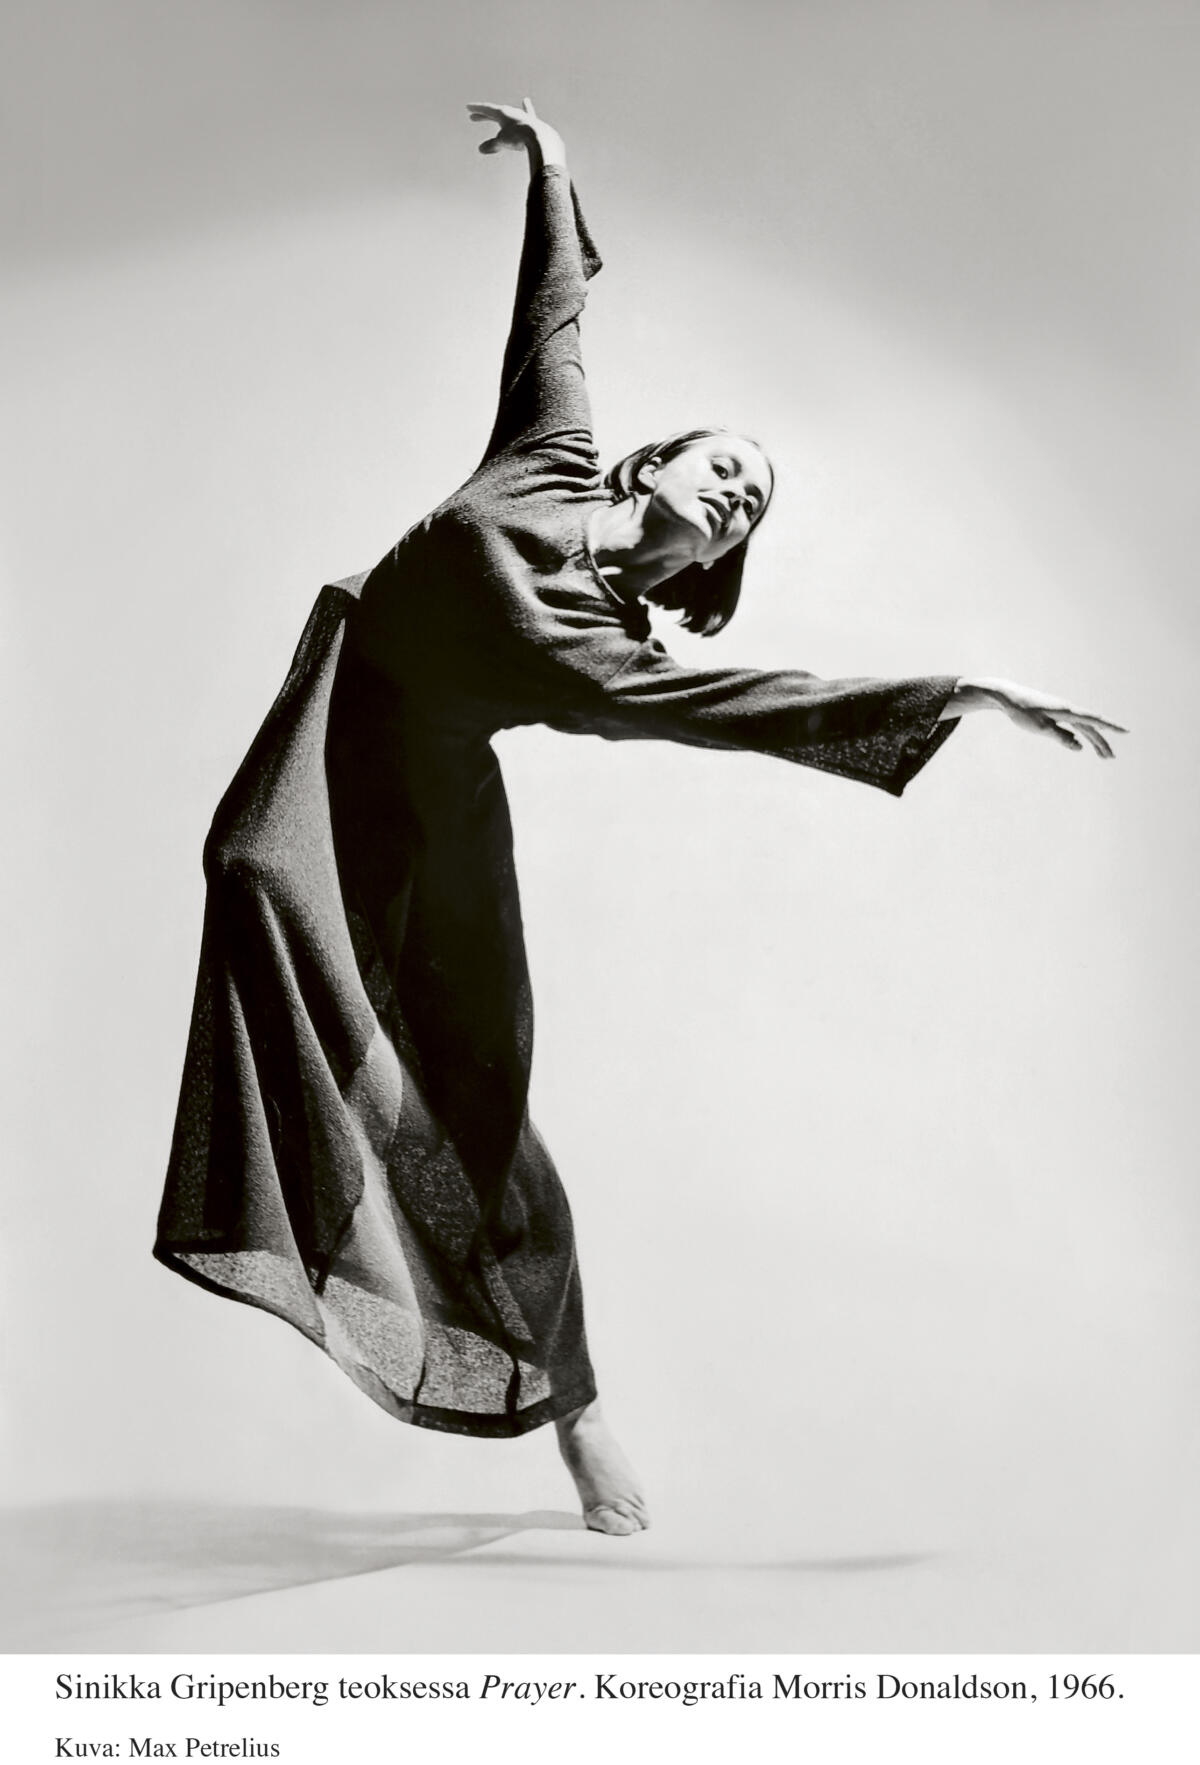 Sinikka Gripenberg tanssii teoksessa Prayer.